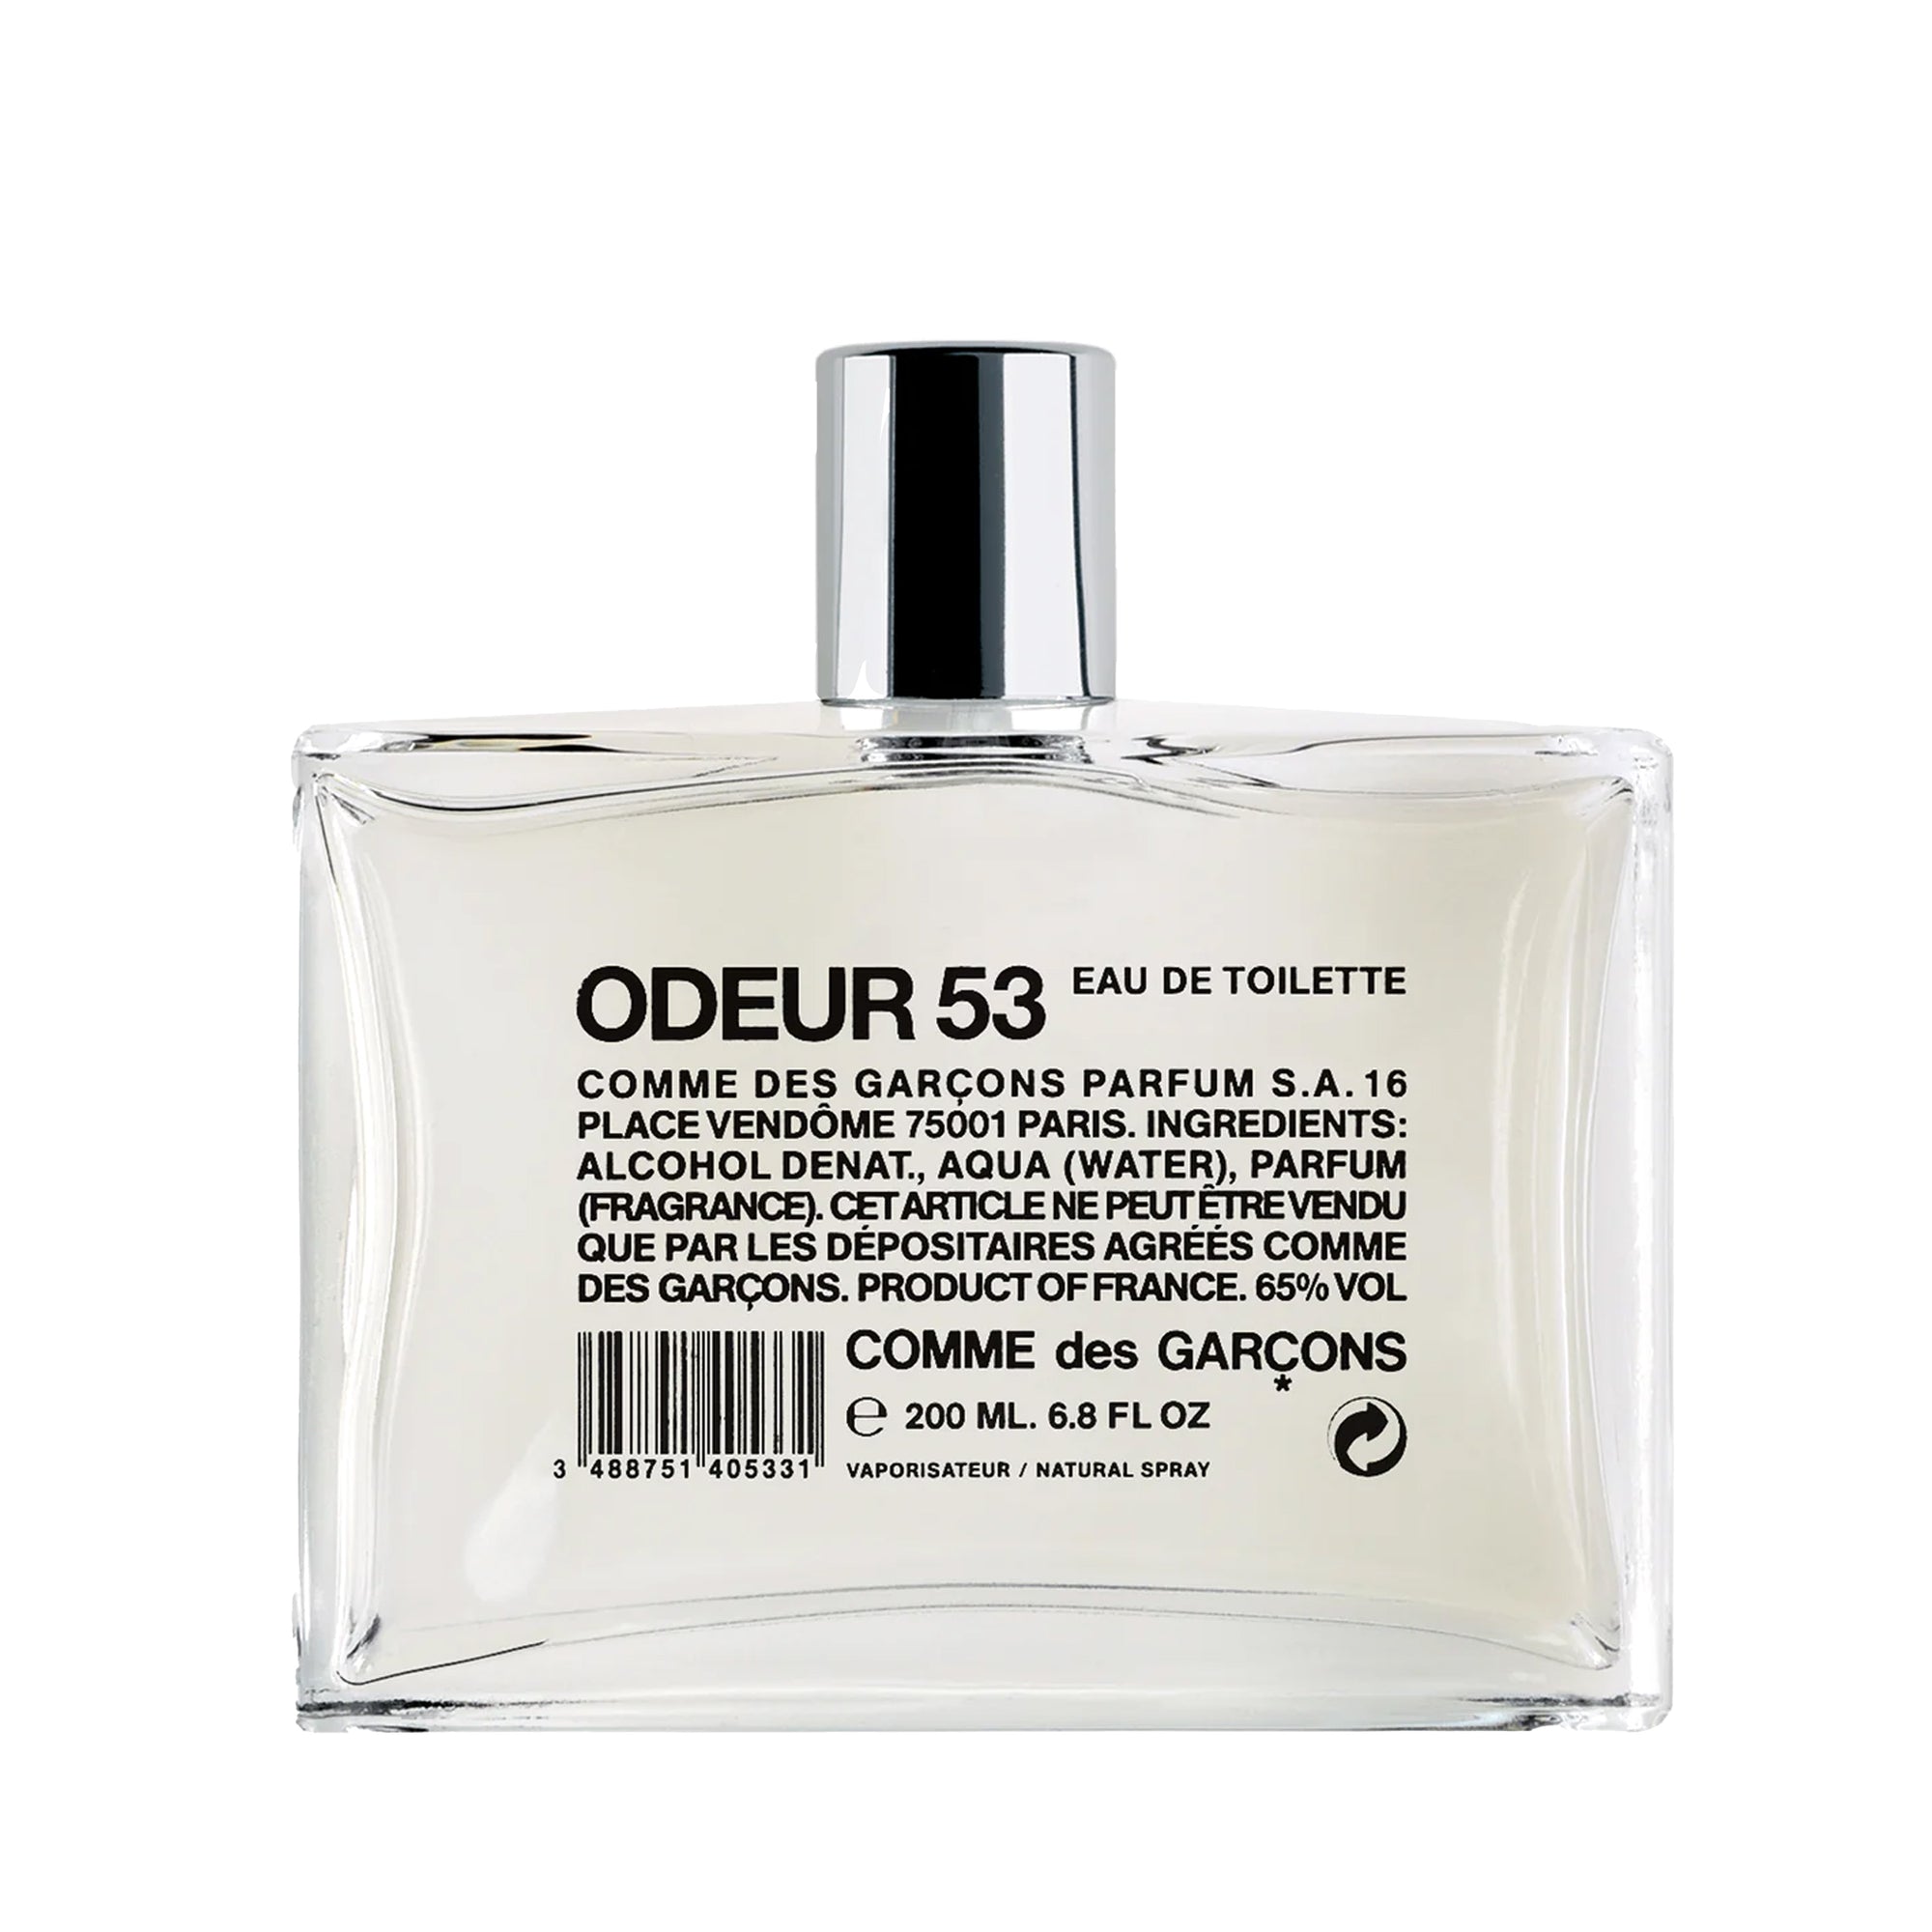 CDG Parfum - Odeur 53 Eau de Toilette - (200ml natural spray) view 1